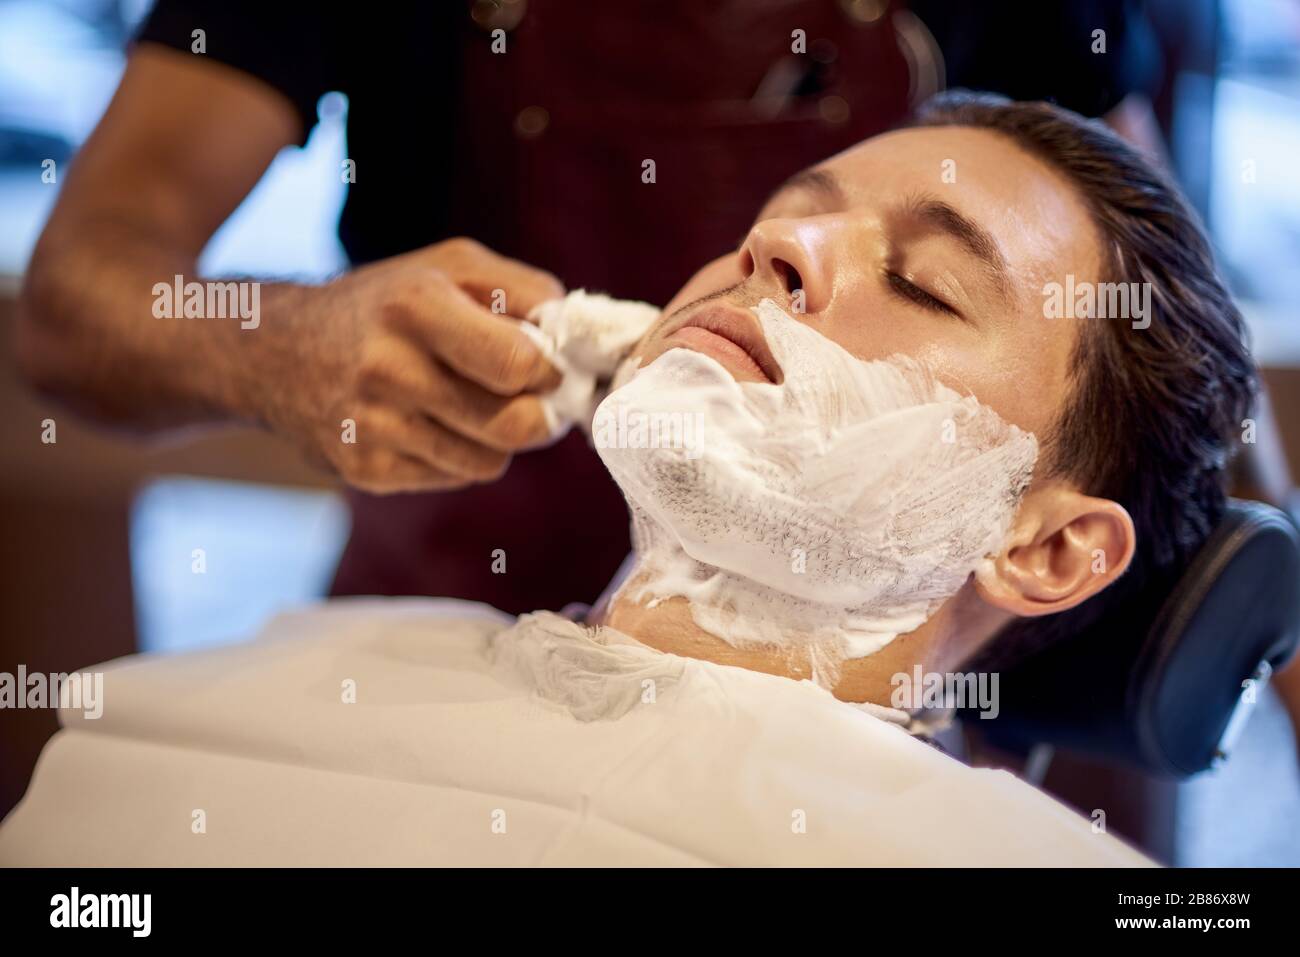 Rasierprozess der Bärte in Barbershop. Der Meister lässt den Kunden seinen  Bart mit einem geraden Rasiermesser rasieren. Arbeiten Sie im Barber Shop,  dem Prozess von Stockfotografie - Alamy